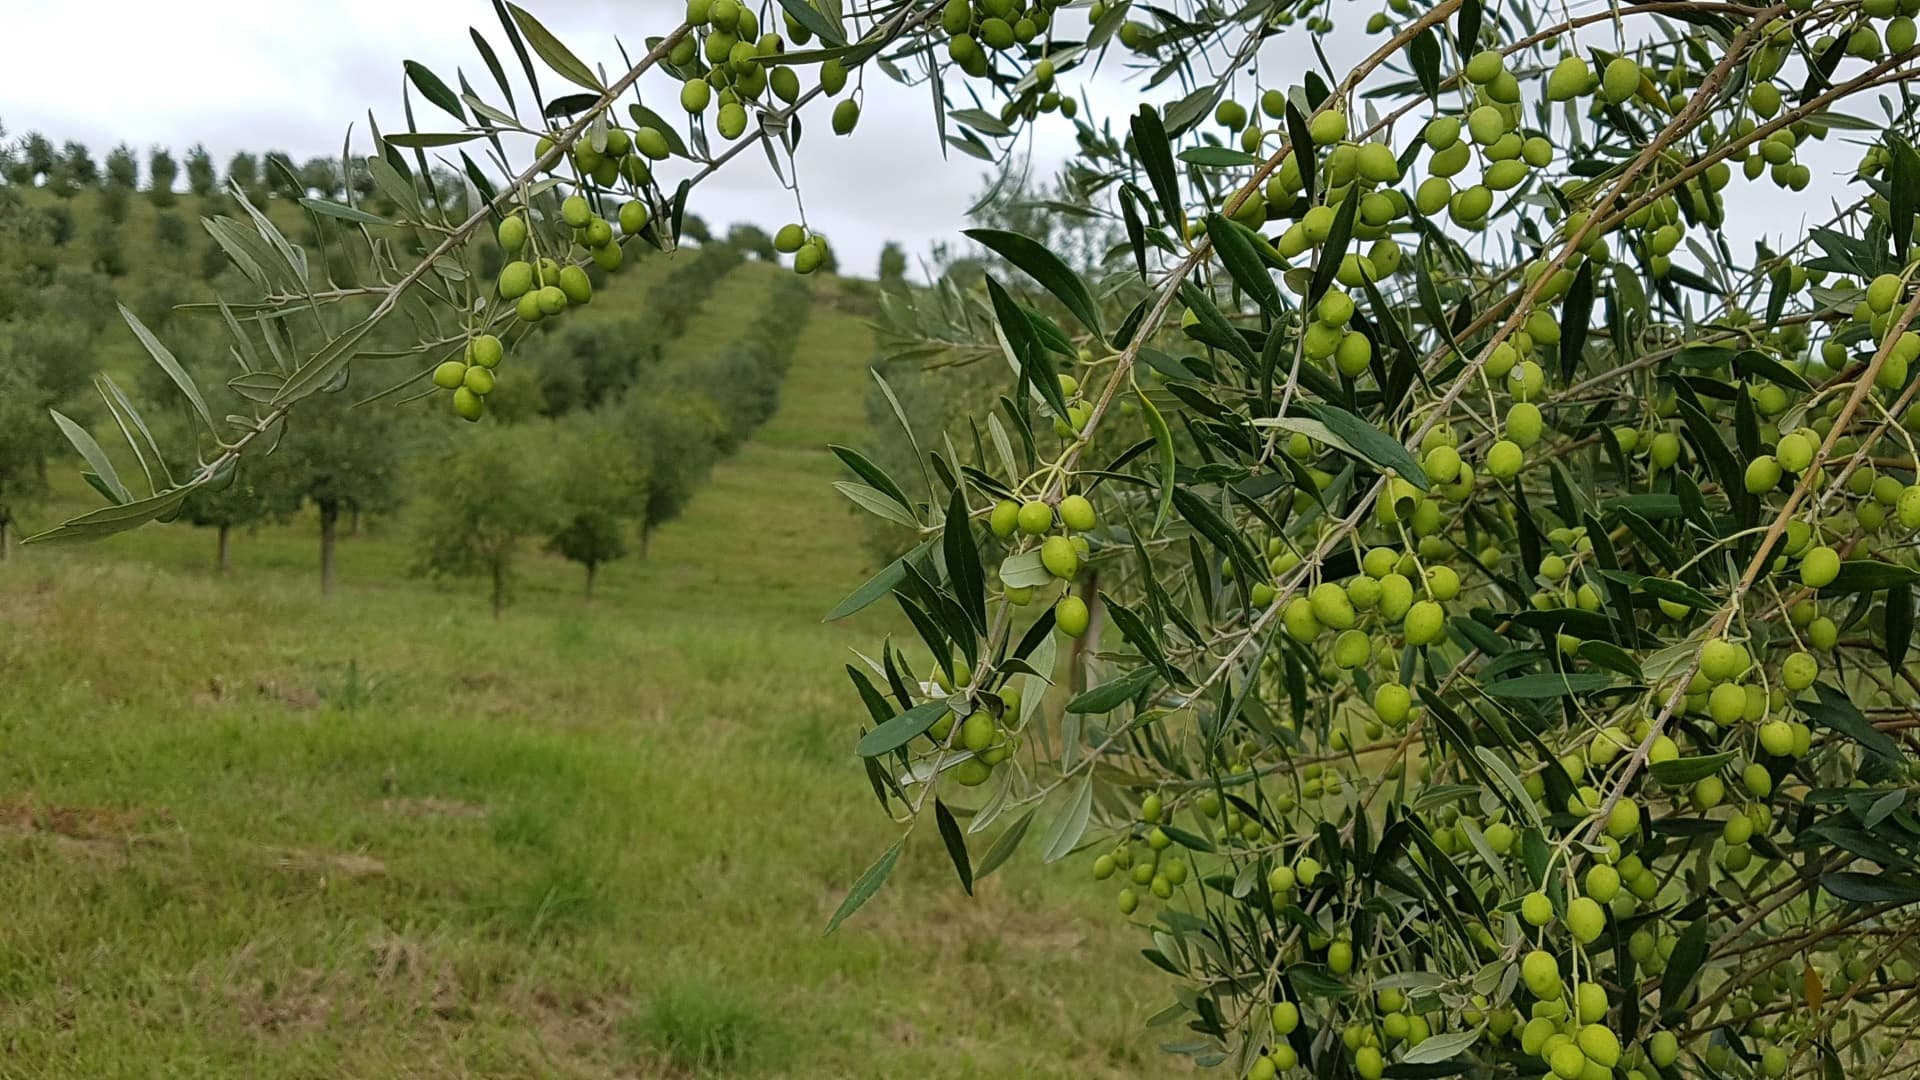 profils-d-amérique-du-sud-production-à-rio-grande-do-sul-la-production-primée-signifie-se-préparer-aux-temps-inattendus-de-l-huile-d-olive